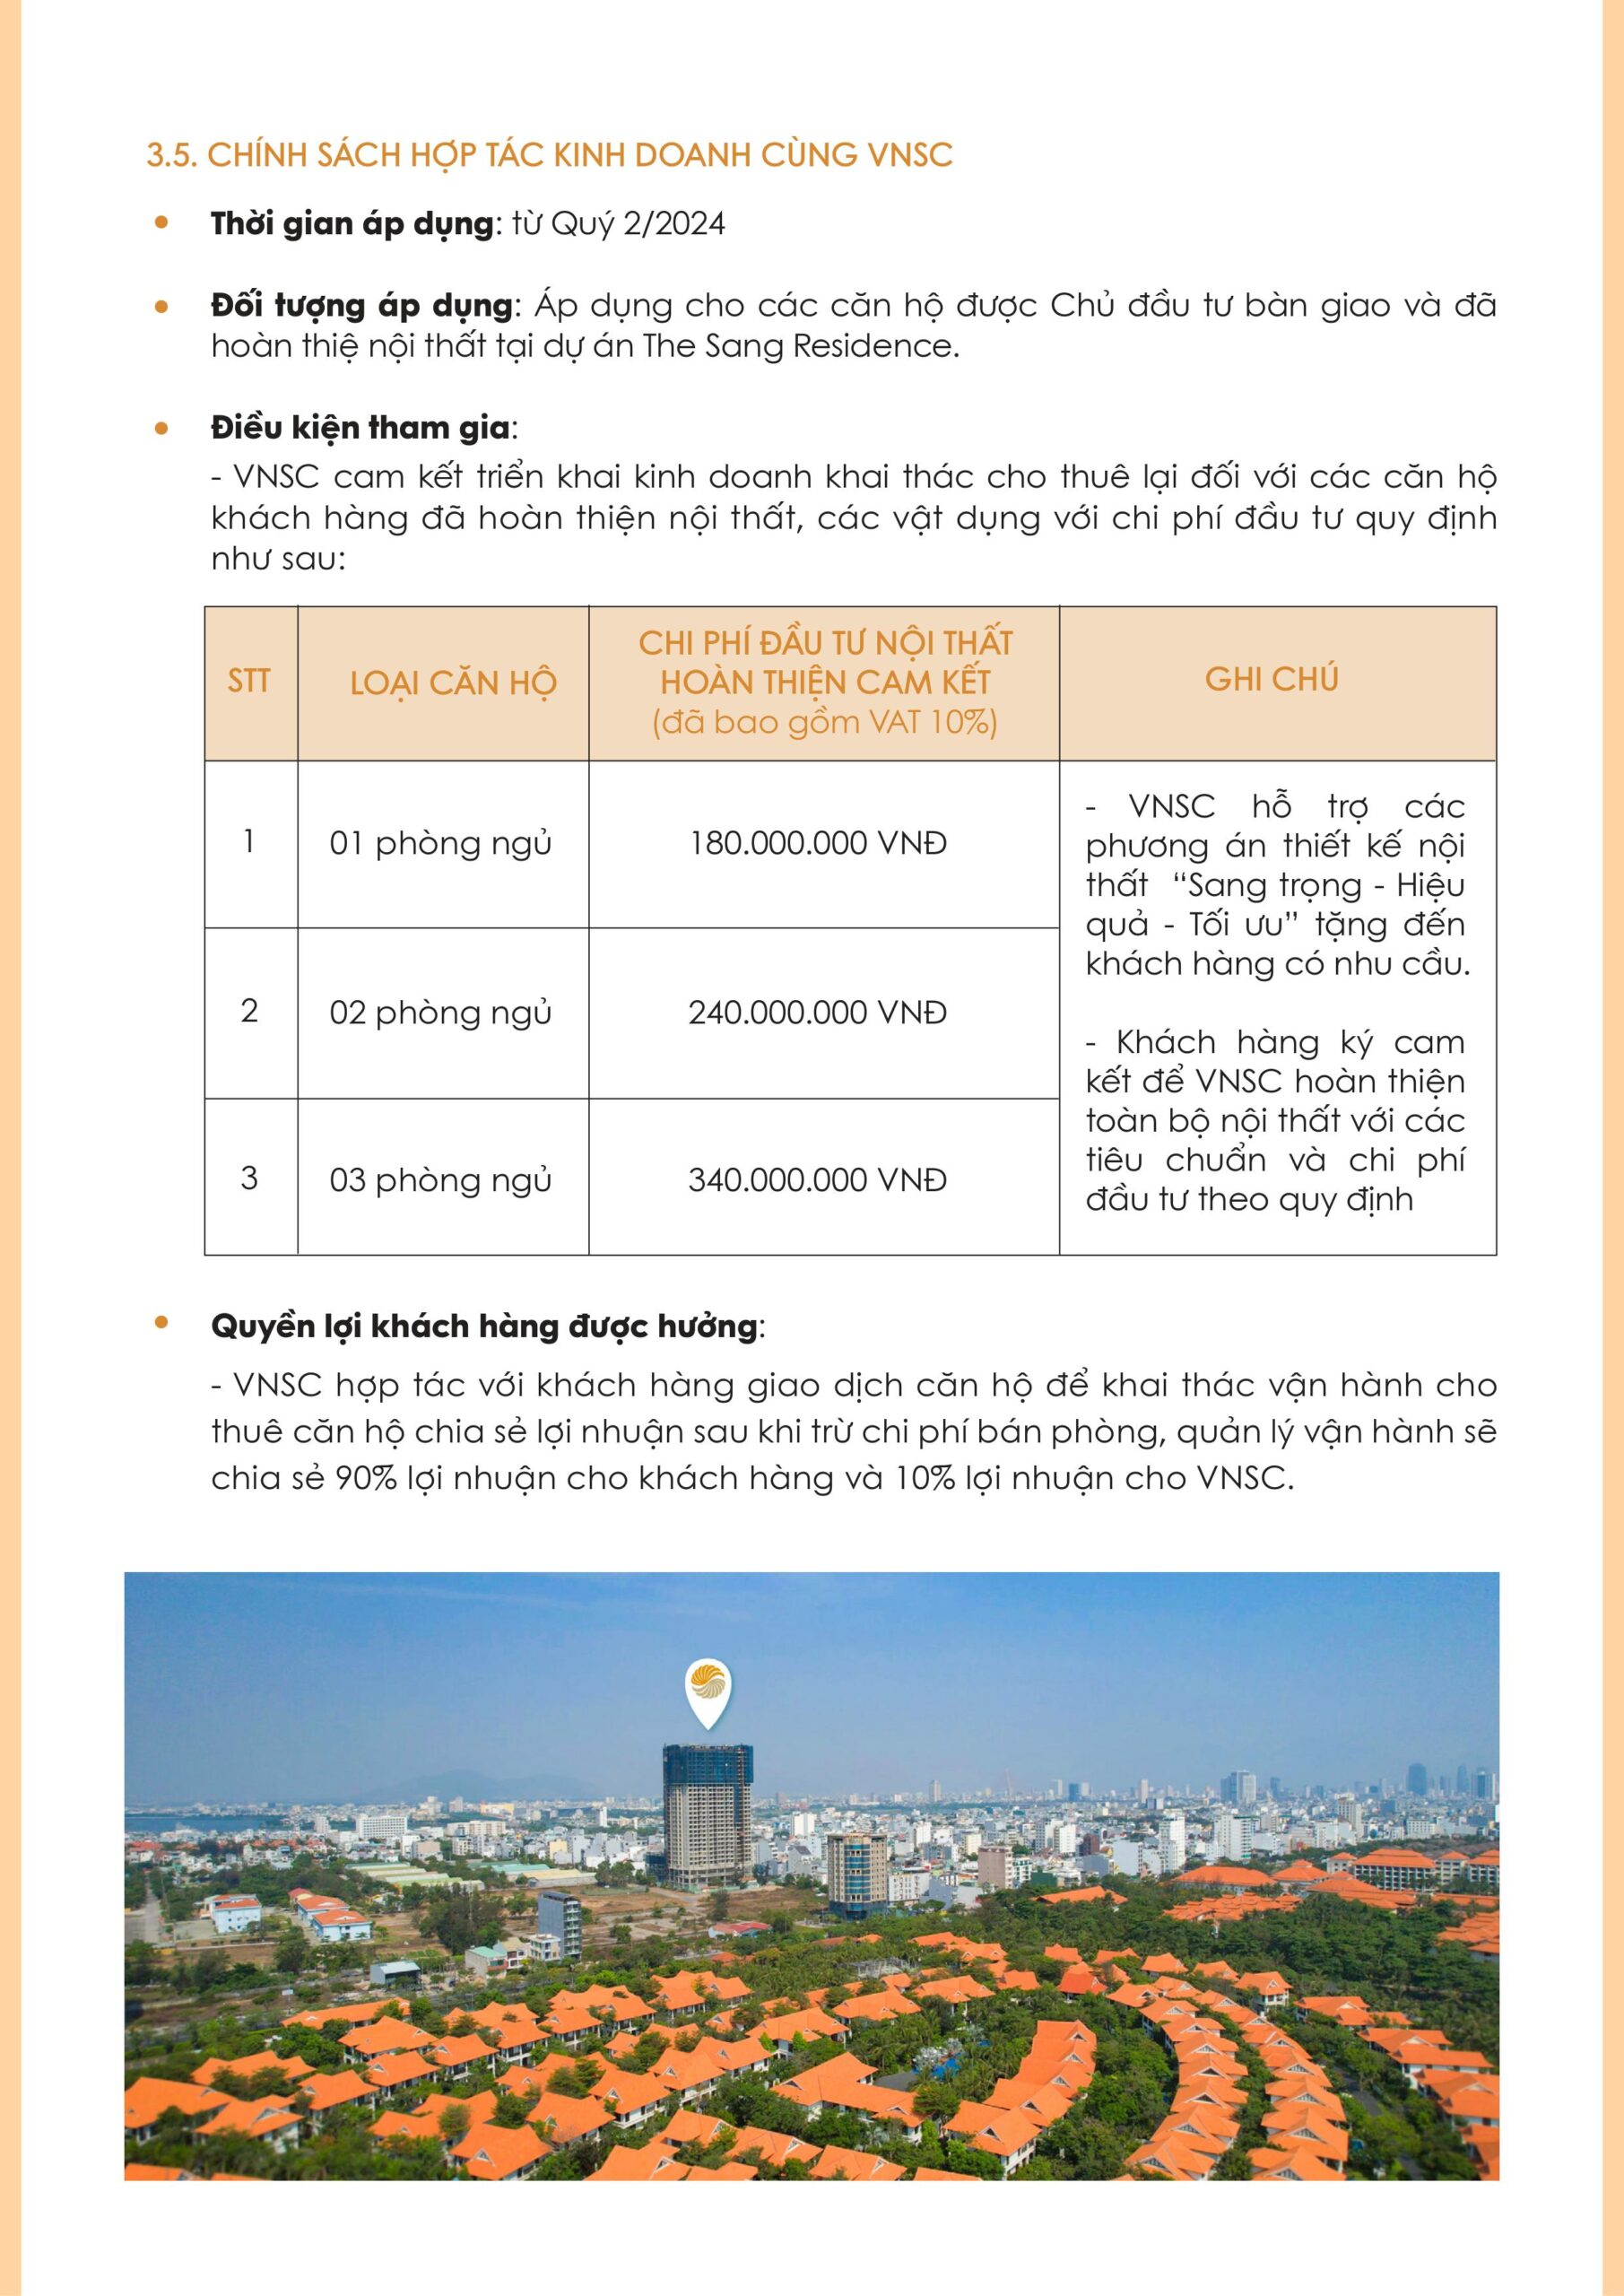 Chính sách bán hàng dự án The Sang Residence cập nhật mới nhất - Viet Nam Smart City